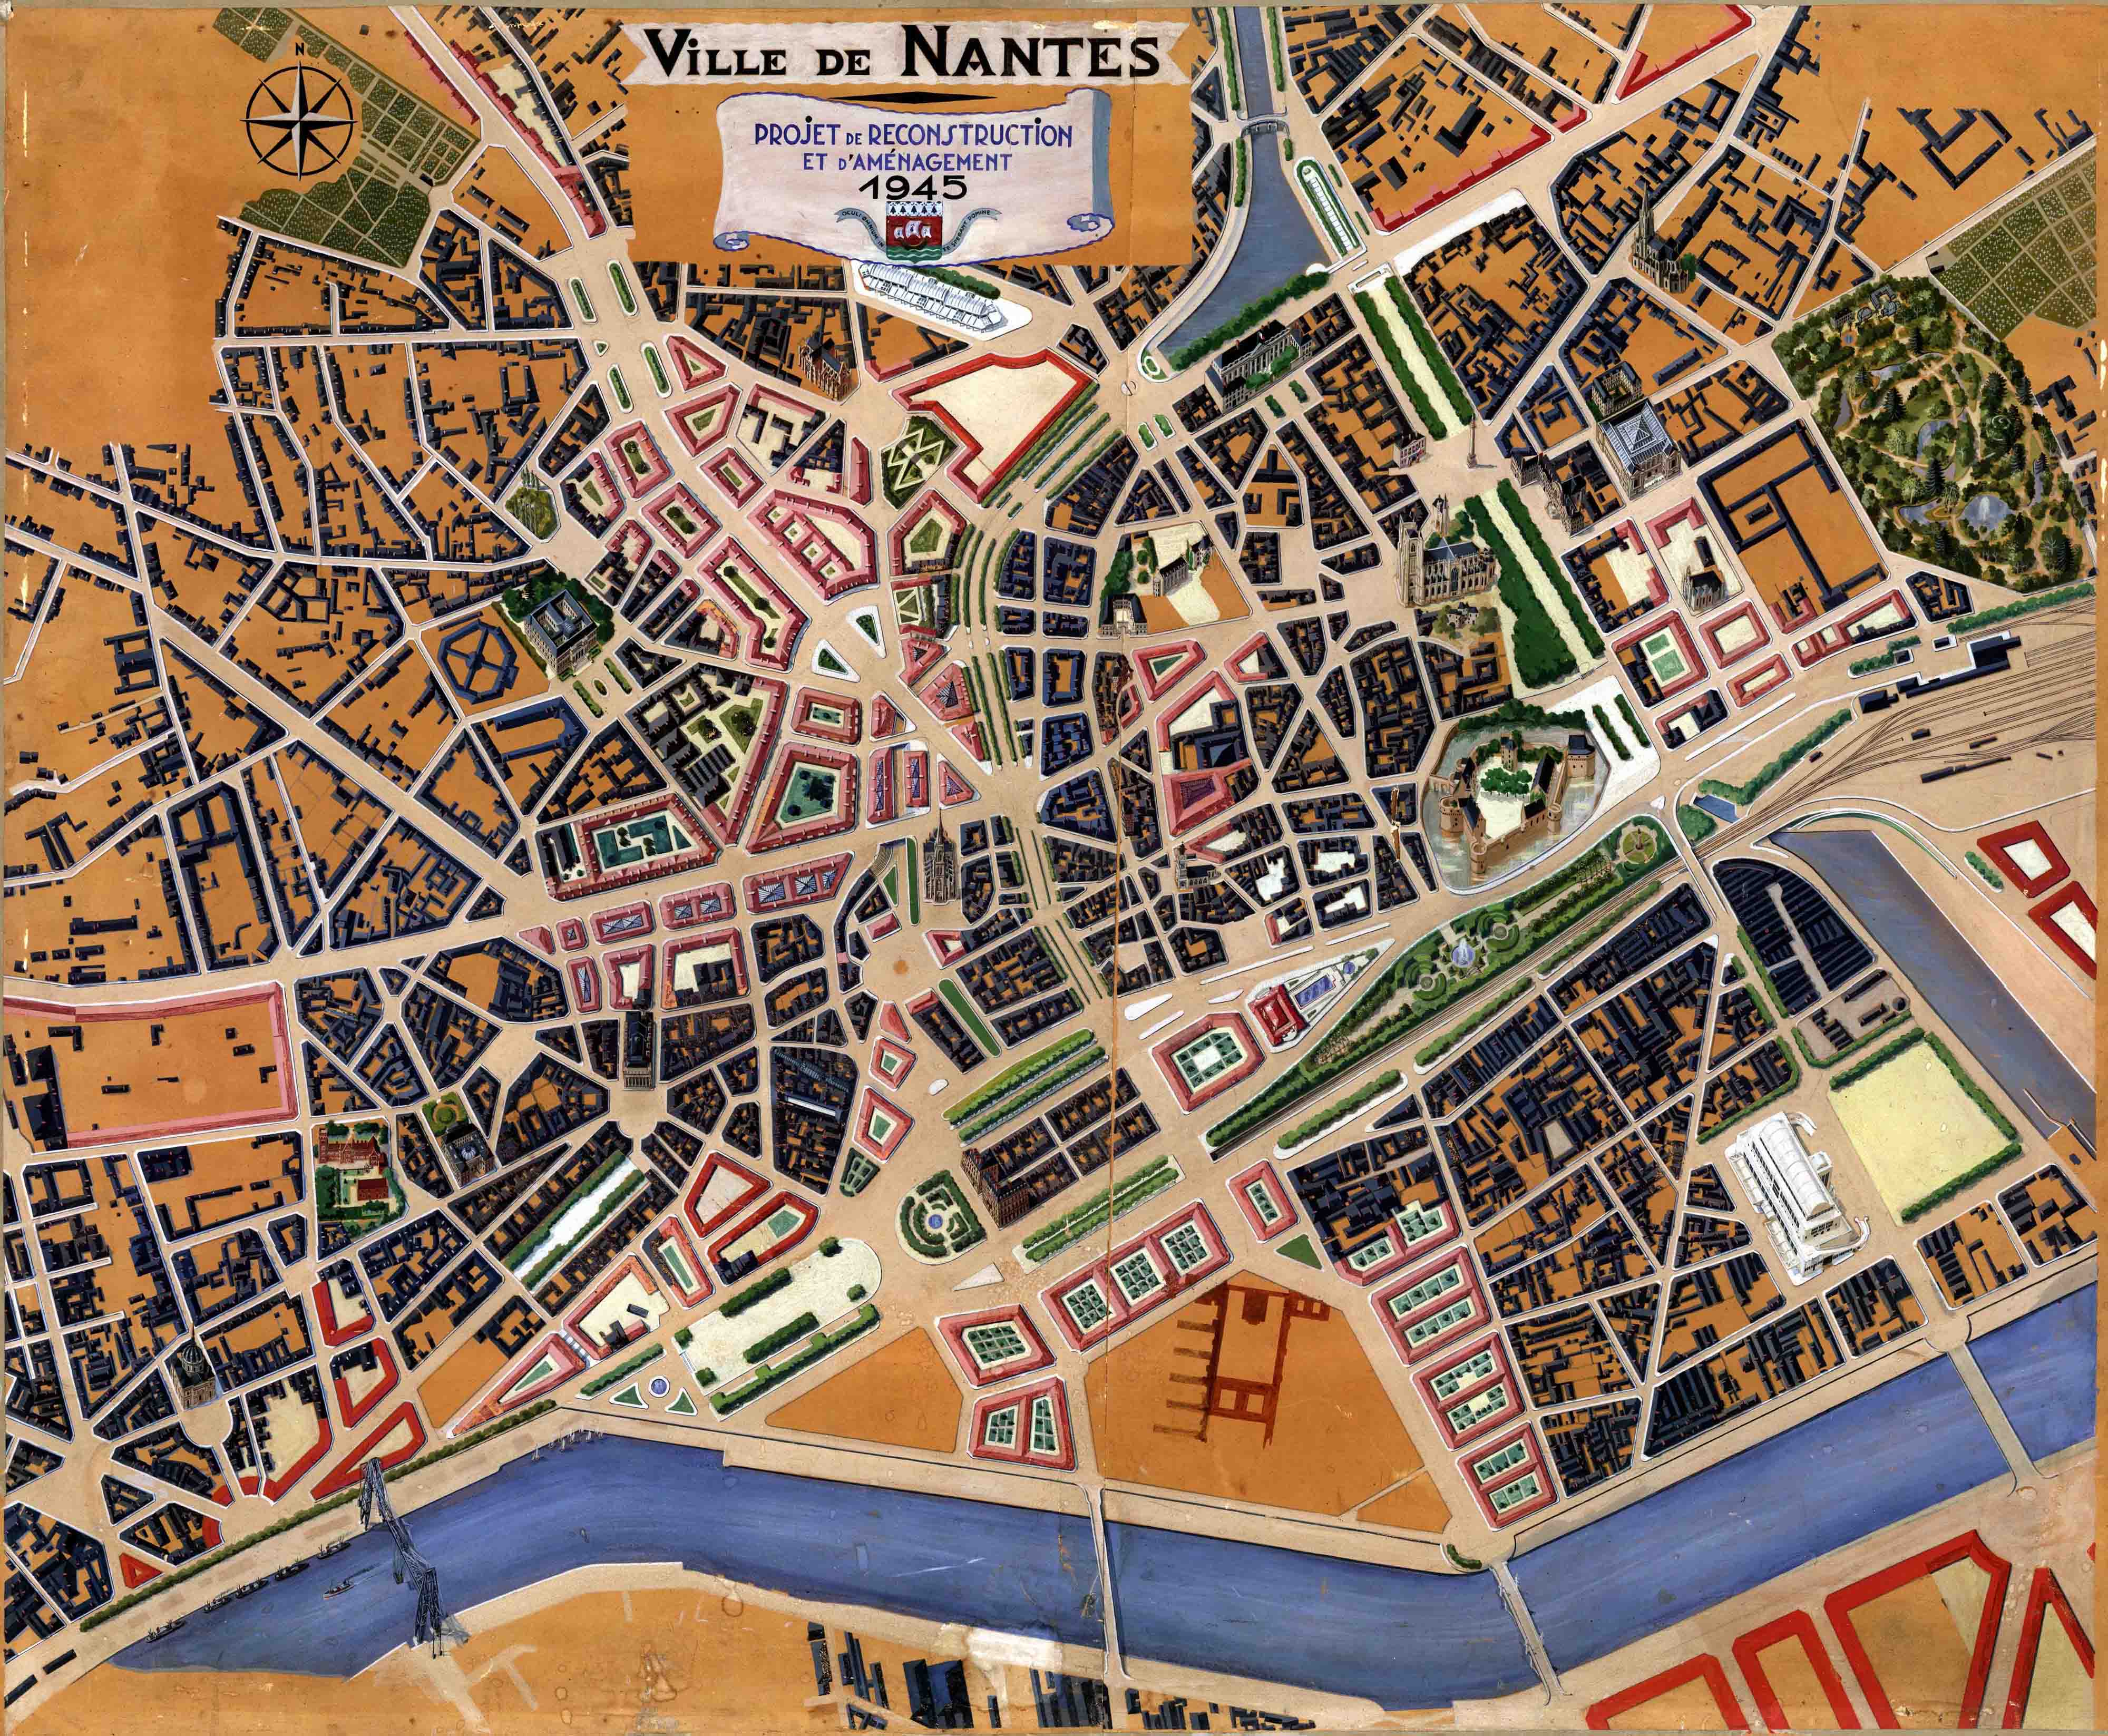 La reconstruction de Nantes